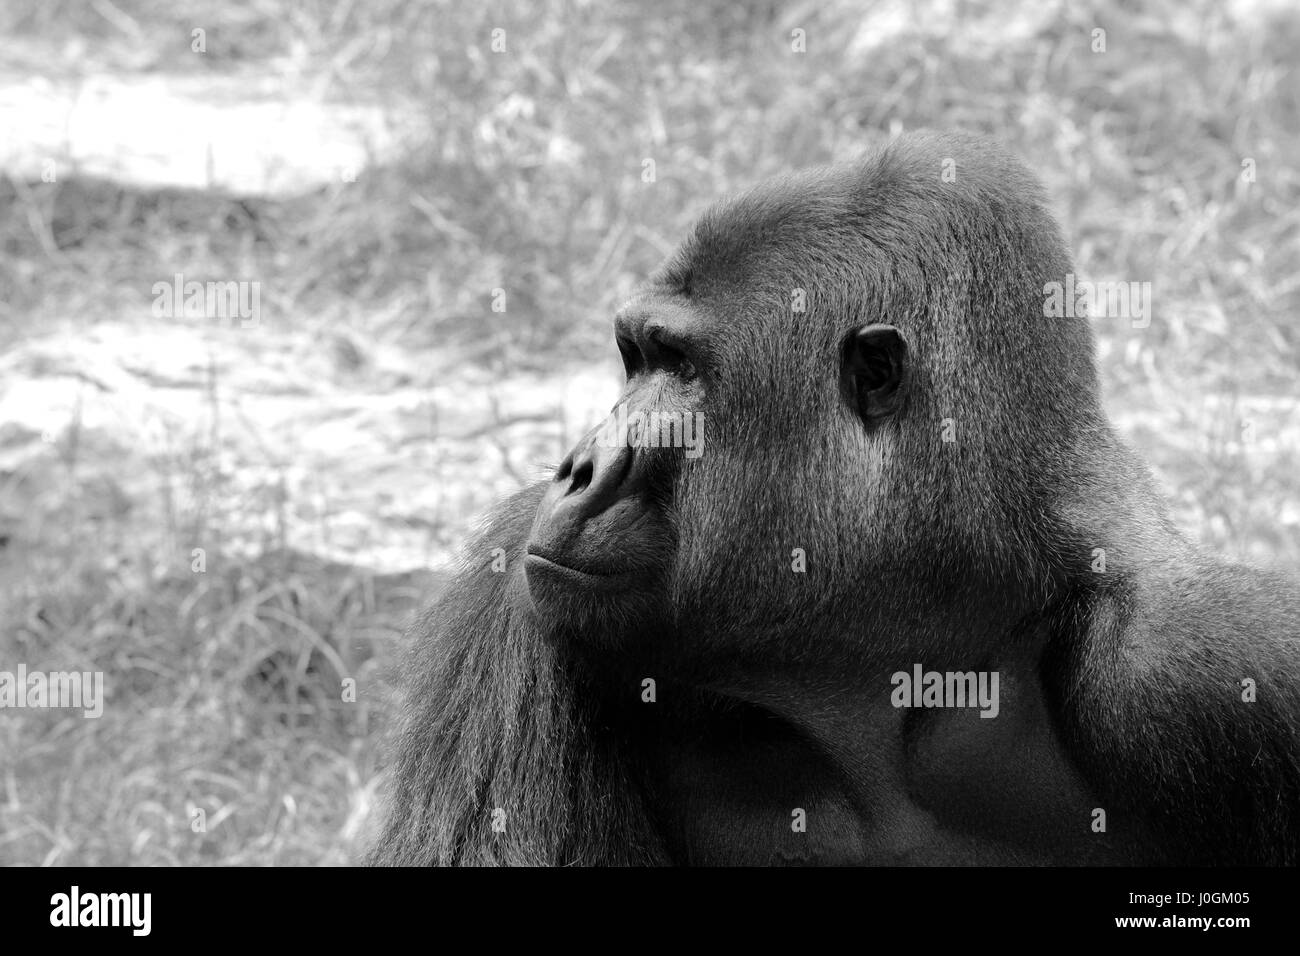 Le plus gros gorilles genre existantes des primates, qui habitent les forêts d'Afrique centrale. Banque D'Images